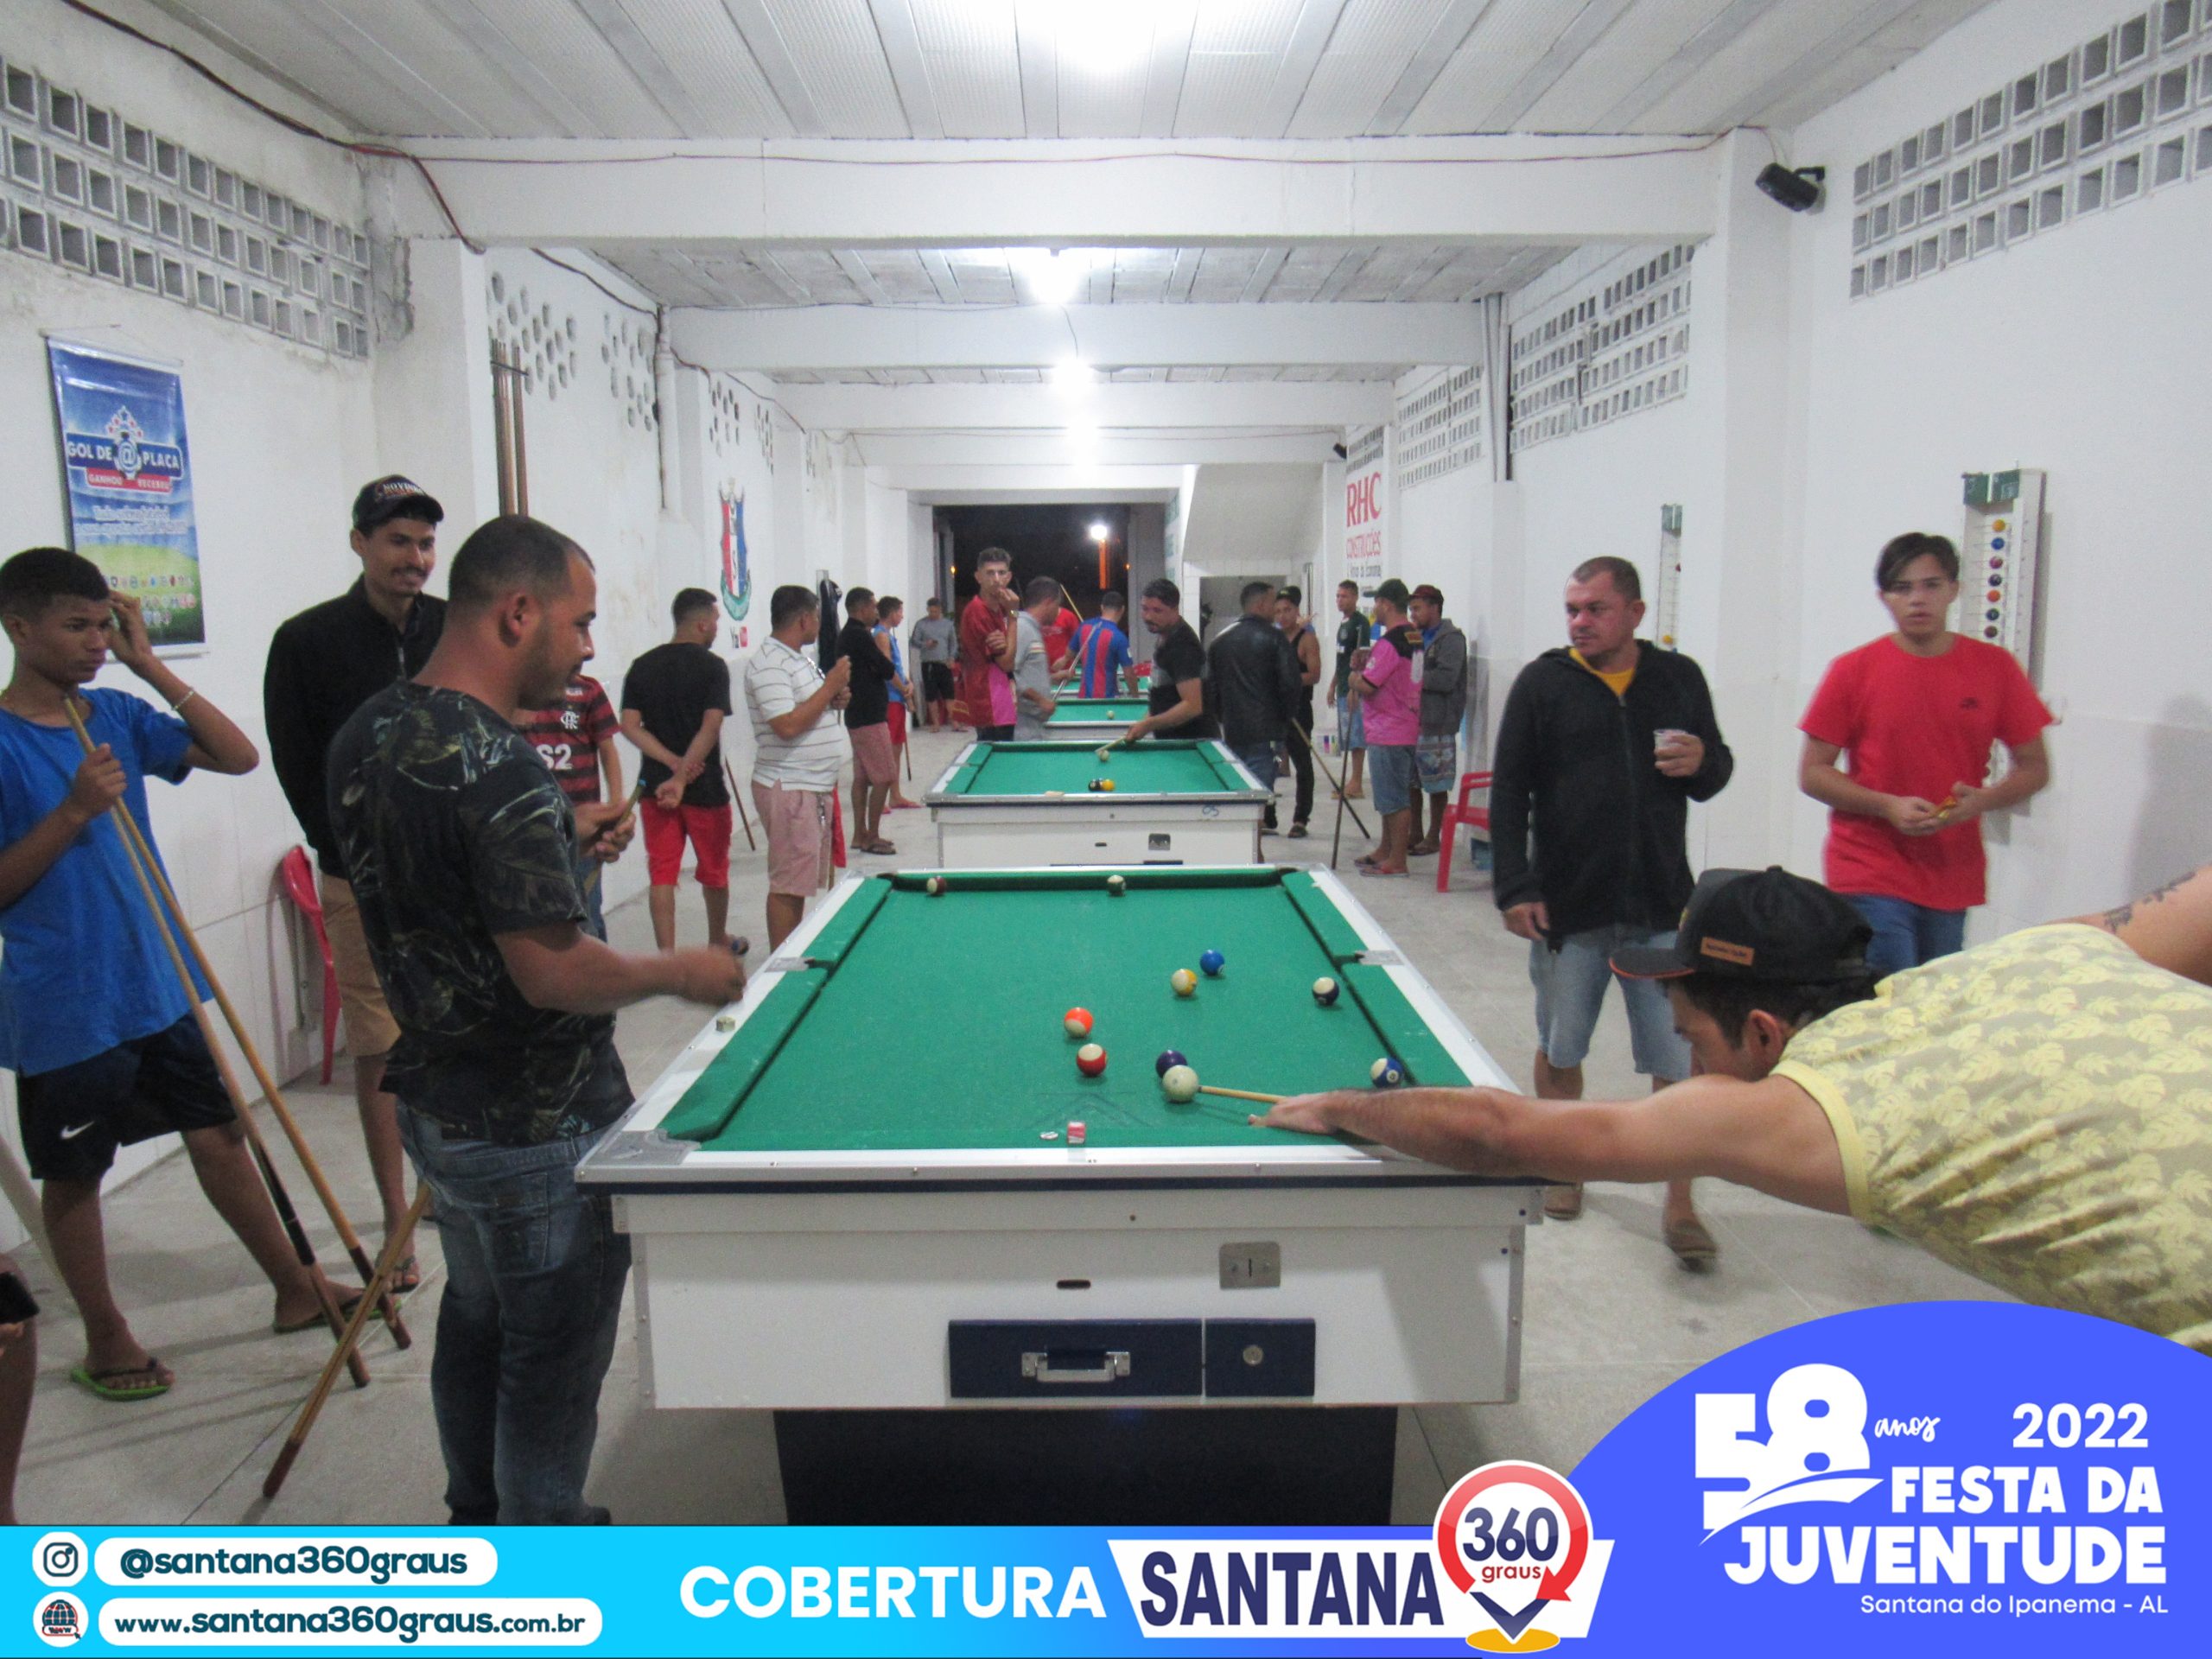 Torneio de Sinuca em Santana do Ipanema – Santana 360 graus